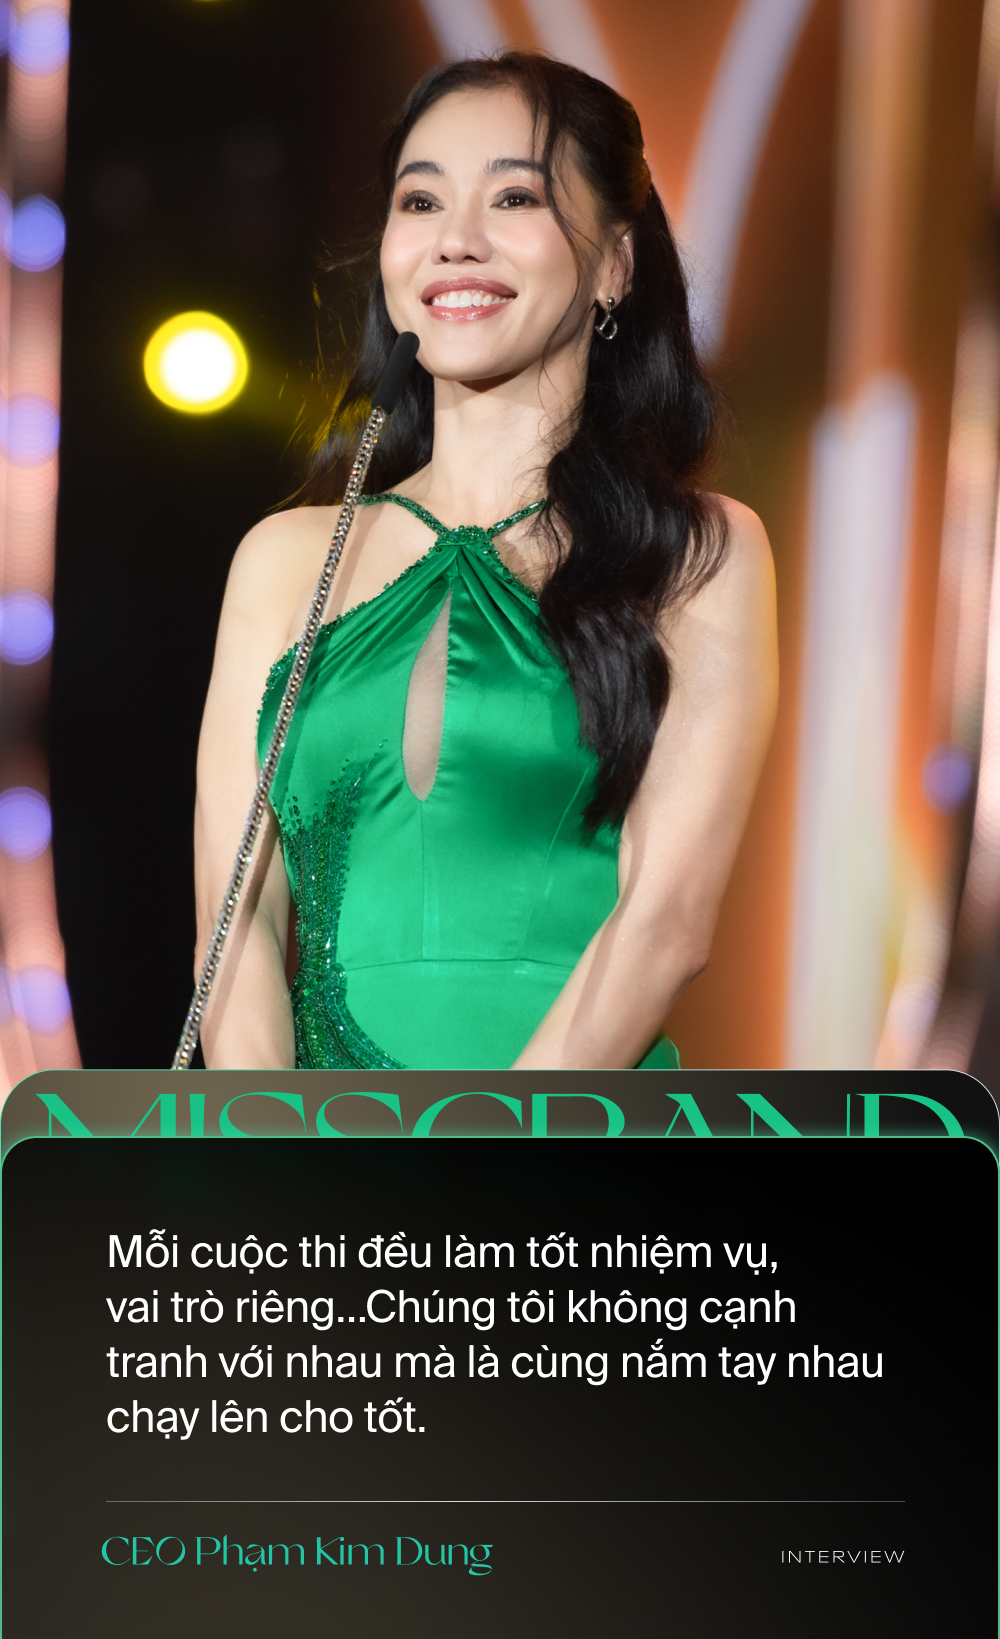 Trưởng BTC Miss Grand Vietnam: Miss Grand không được tạo ra để cạnh tranh với cuộc thi khác, chúng tôi cùng nắm tay nhau chạy lên cho tốt - Ảnh 3.